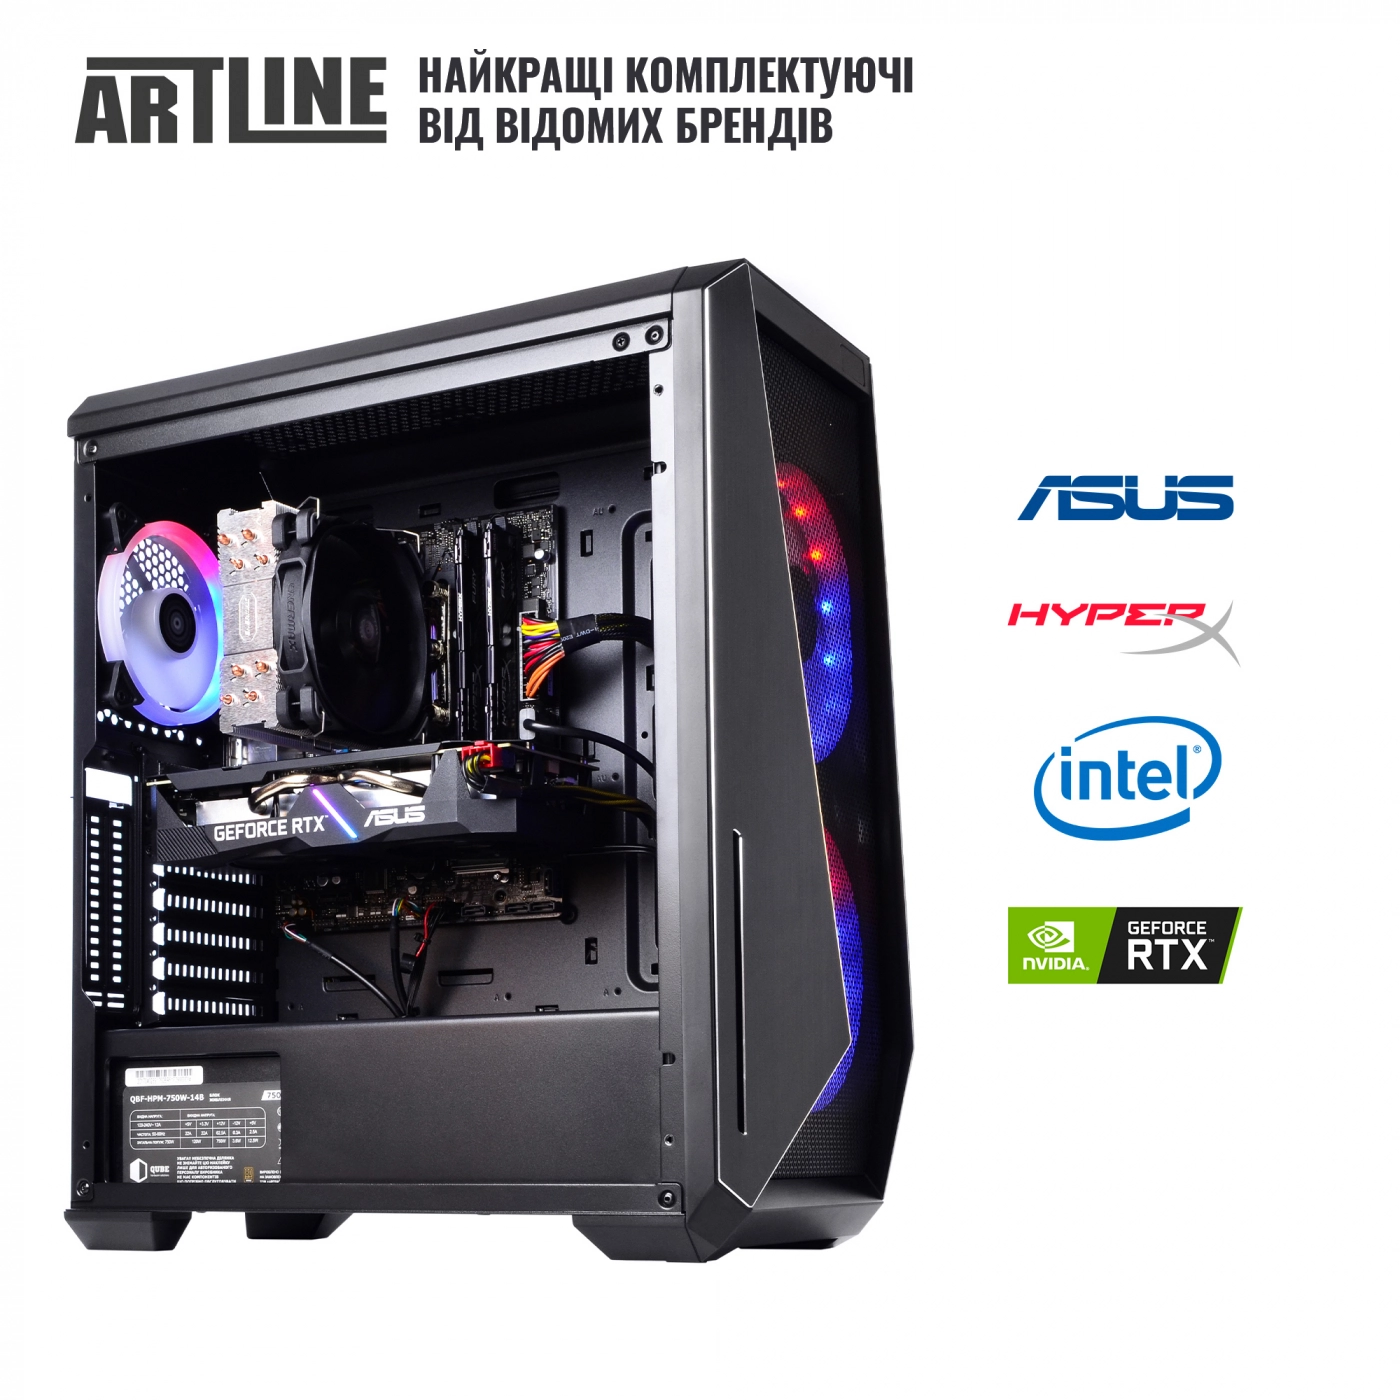 Купить Компьютер ARTLINE Gaming X90v06 - фото 6